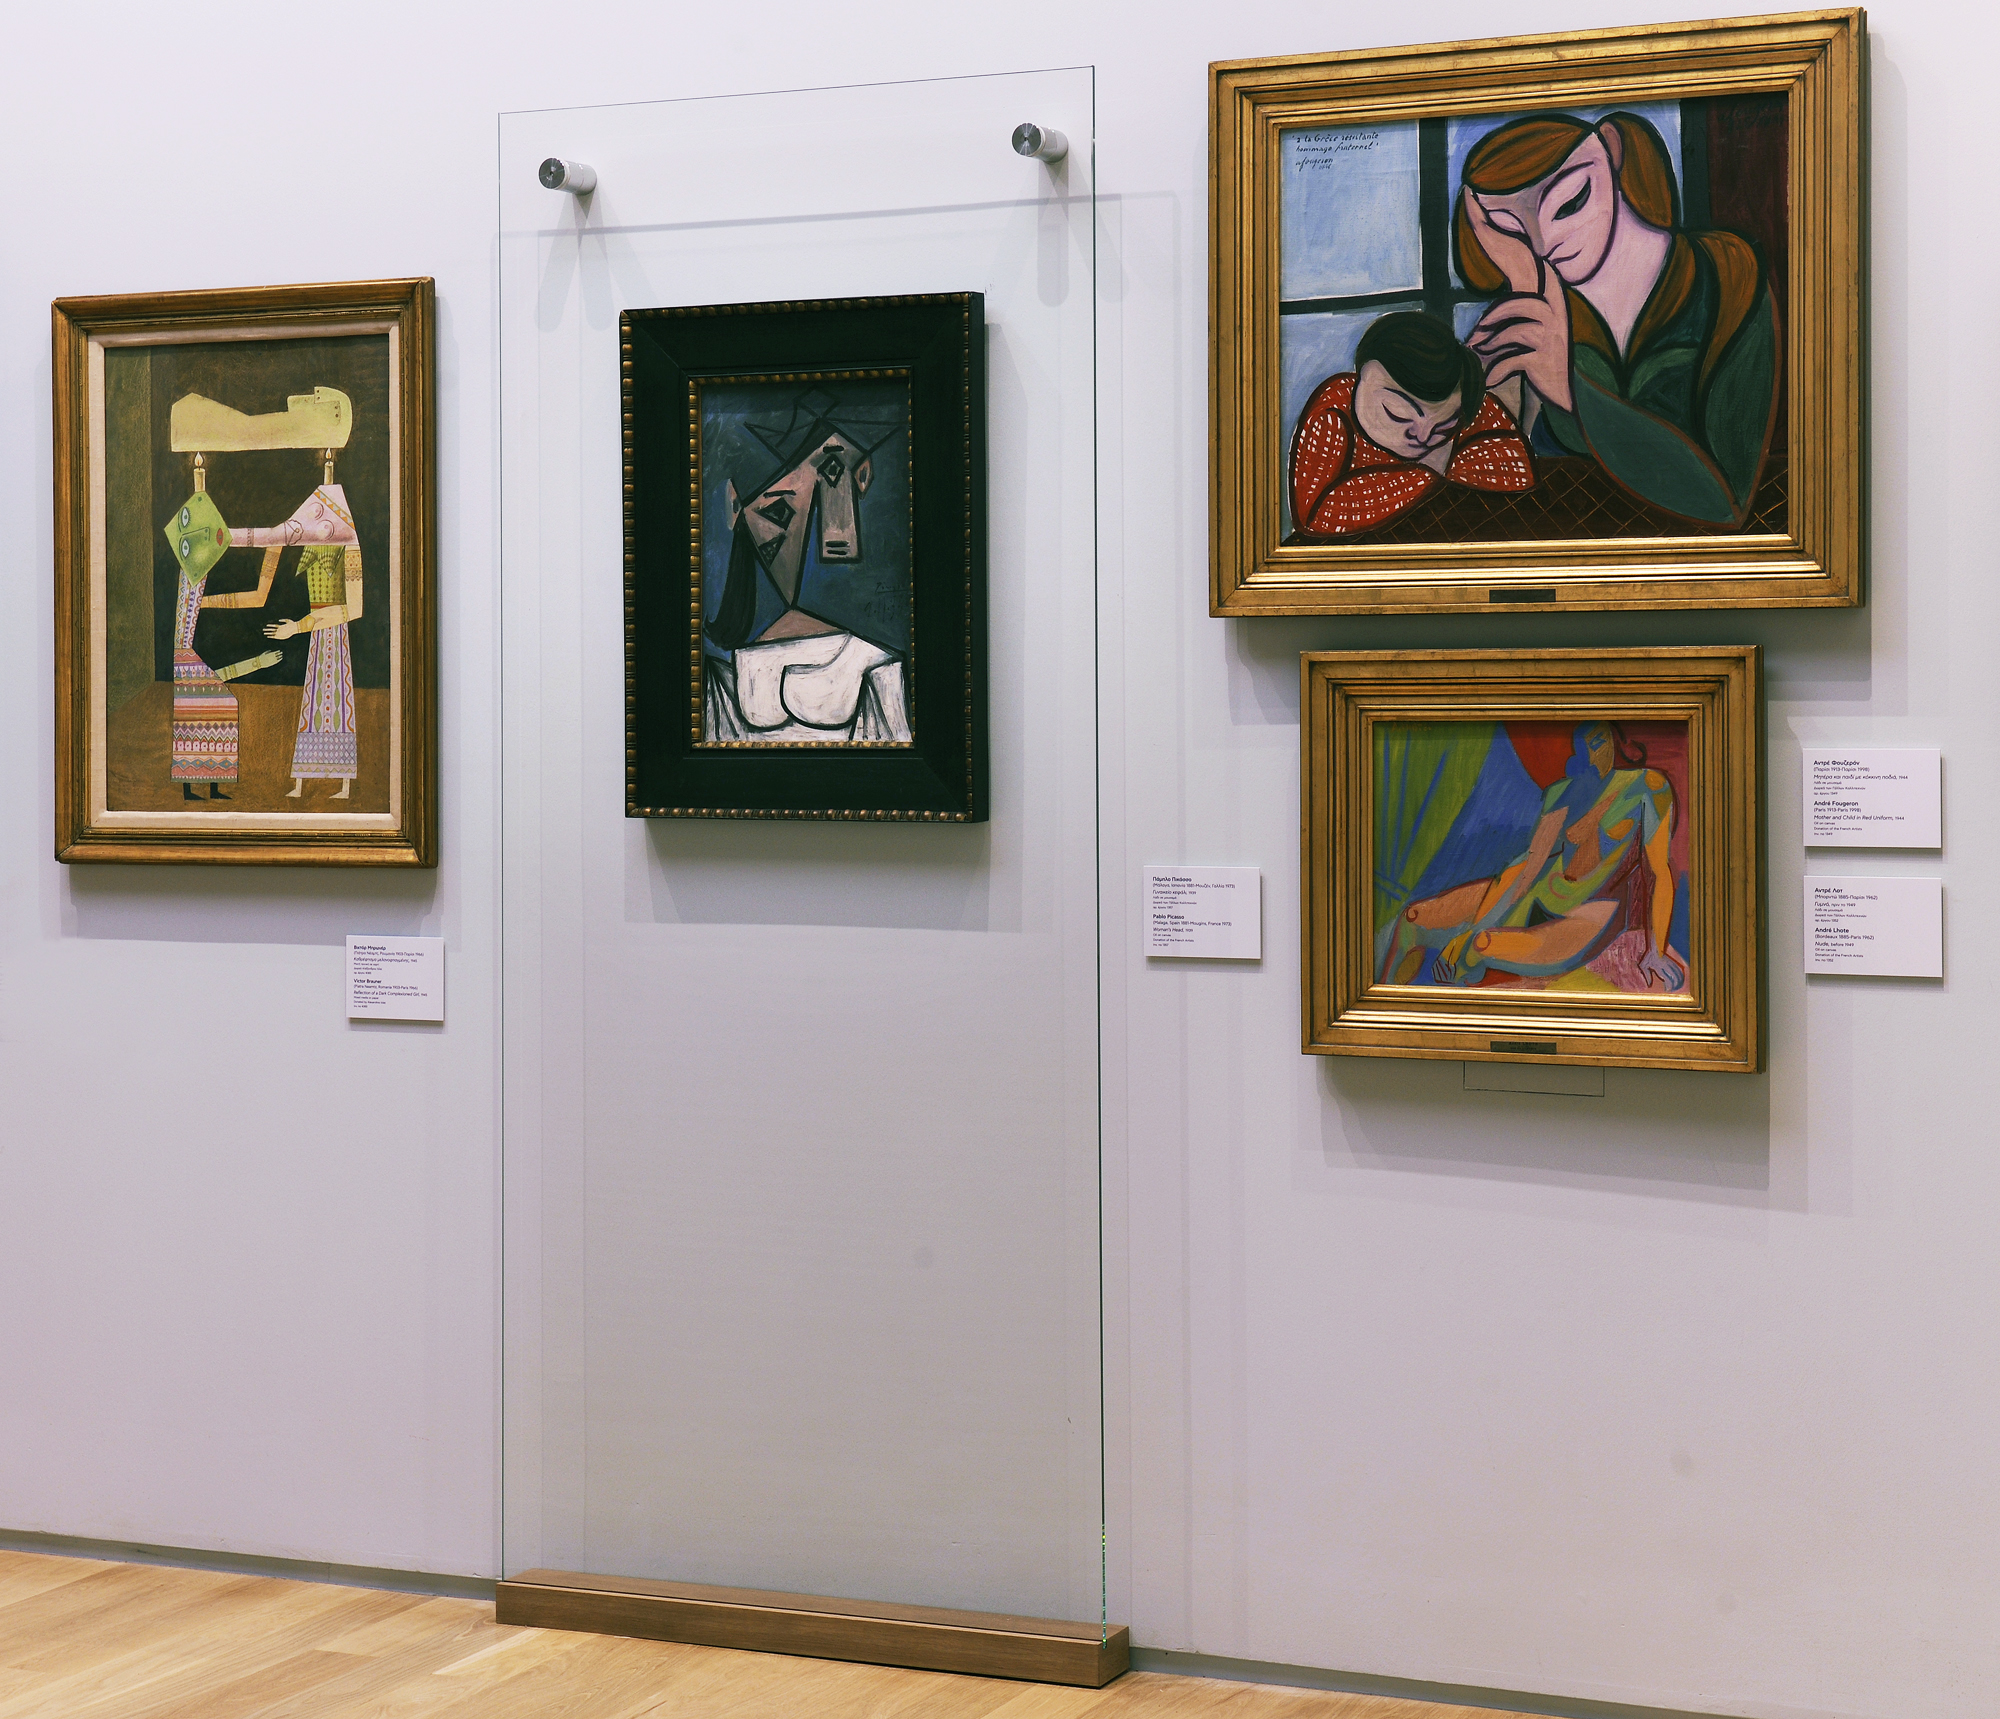 Ο πολυσυζητημένος κλεμμένος πίνακας του Πικάσο, «Γυναικείο κεφάλι», θα εκτίθεται στην Αίθουσα Δυτικοευρωπαϊκής Τέχνης, στην Εθνική Πινακοθήκη